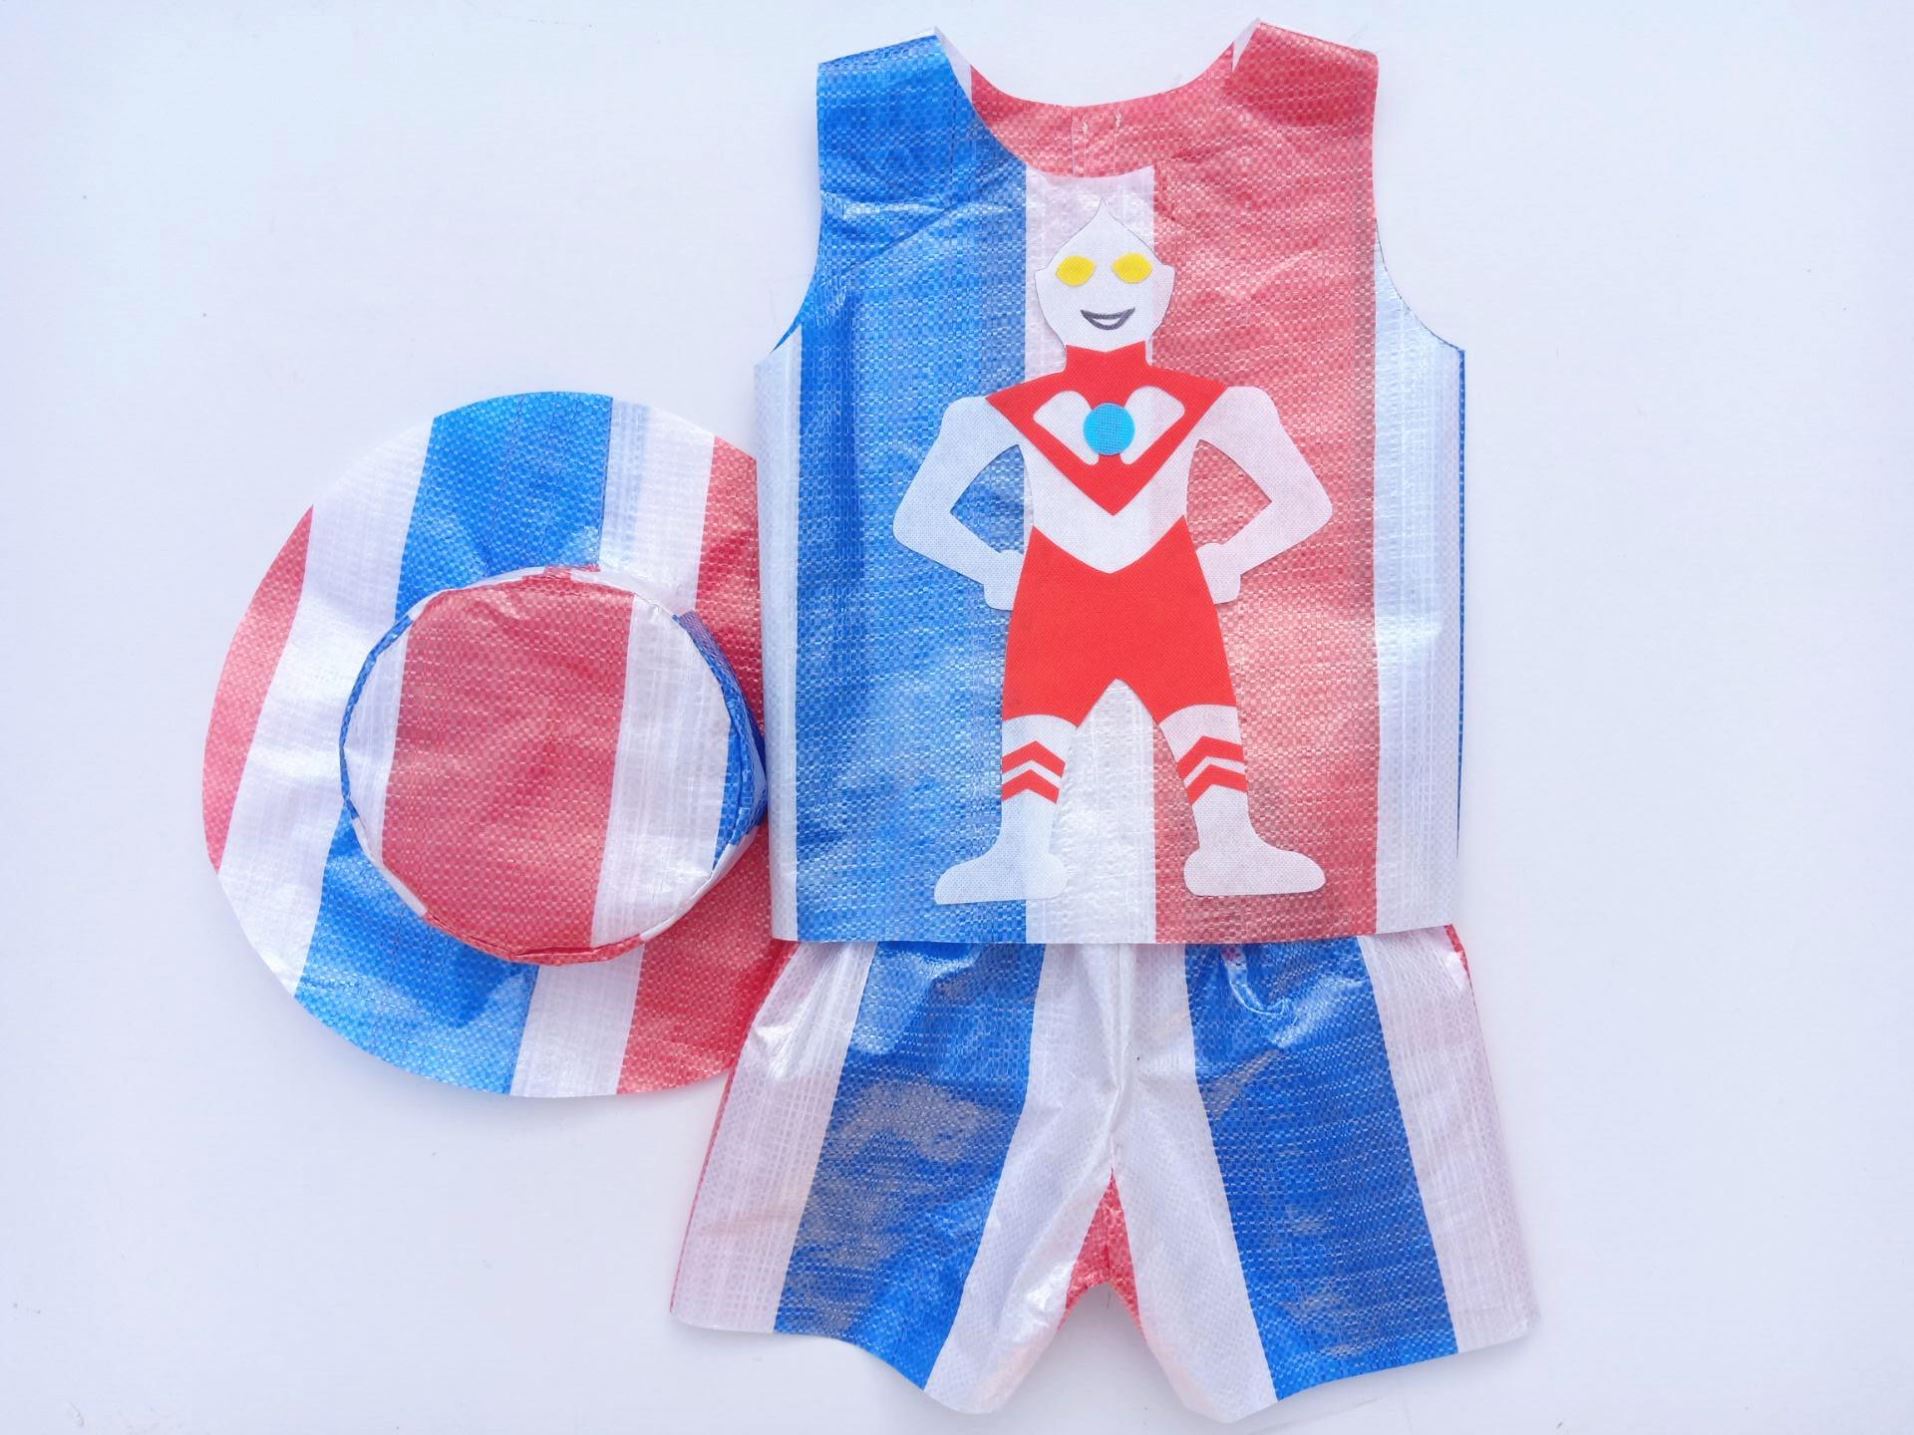 环保服装时装秀六一创意亲子材料DIY幼儿园衣服废物利用走秀